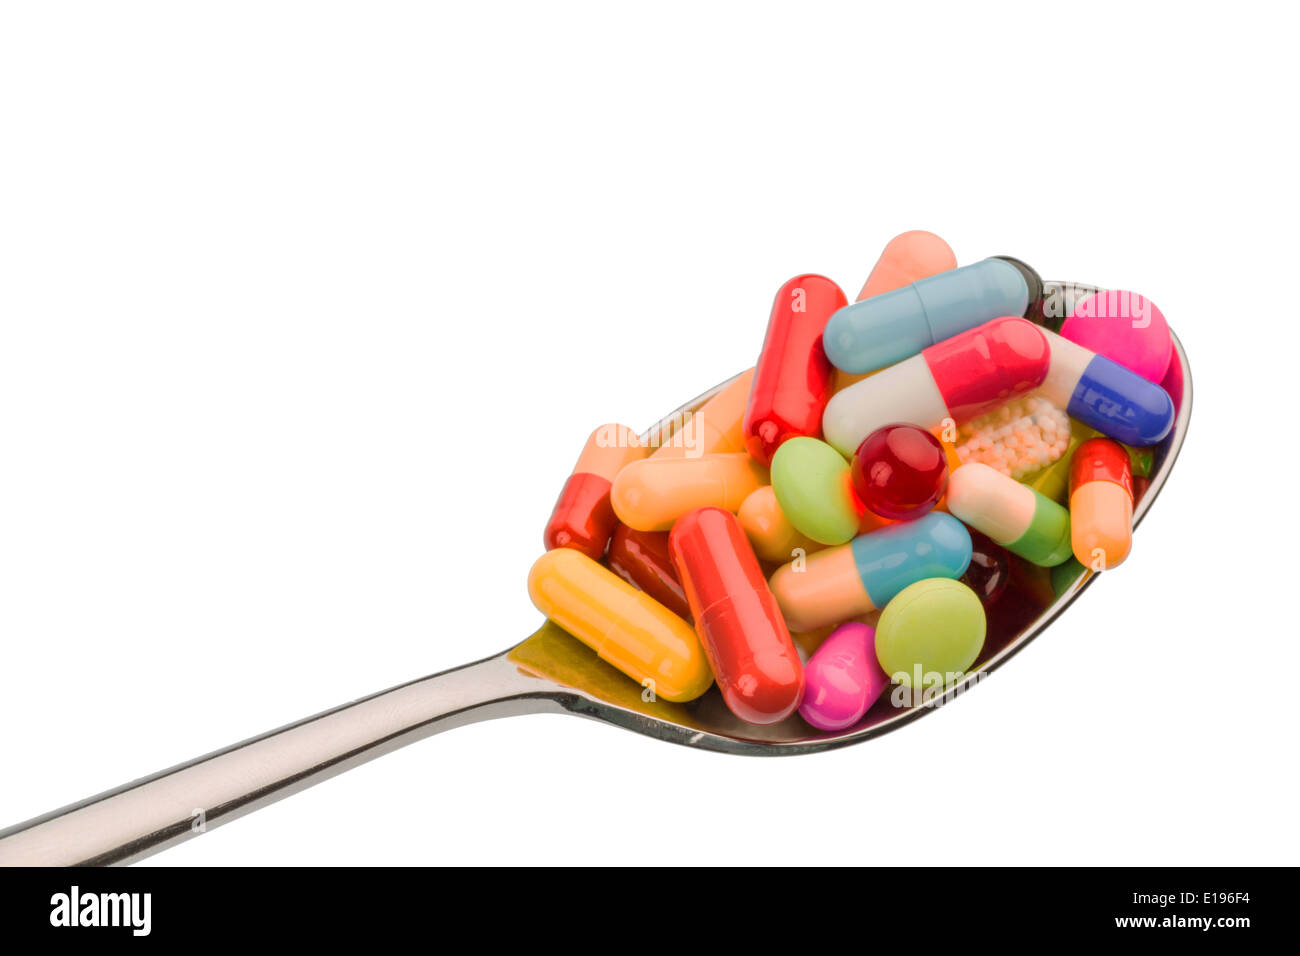 Viele bunte Tabletten auf einem Lˆffel. Symbolfoto f¸r Tablettensucht und Miﬂbrauch von Medikamenten. Stock Photo